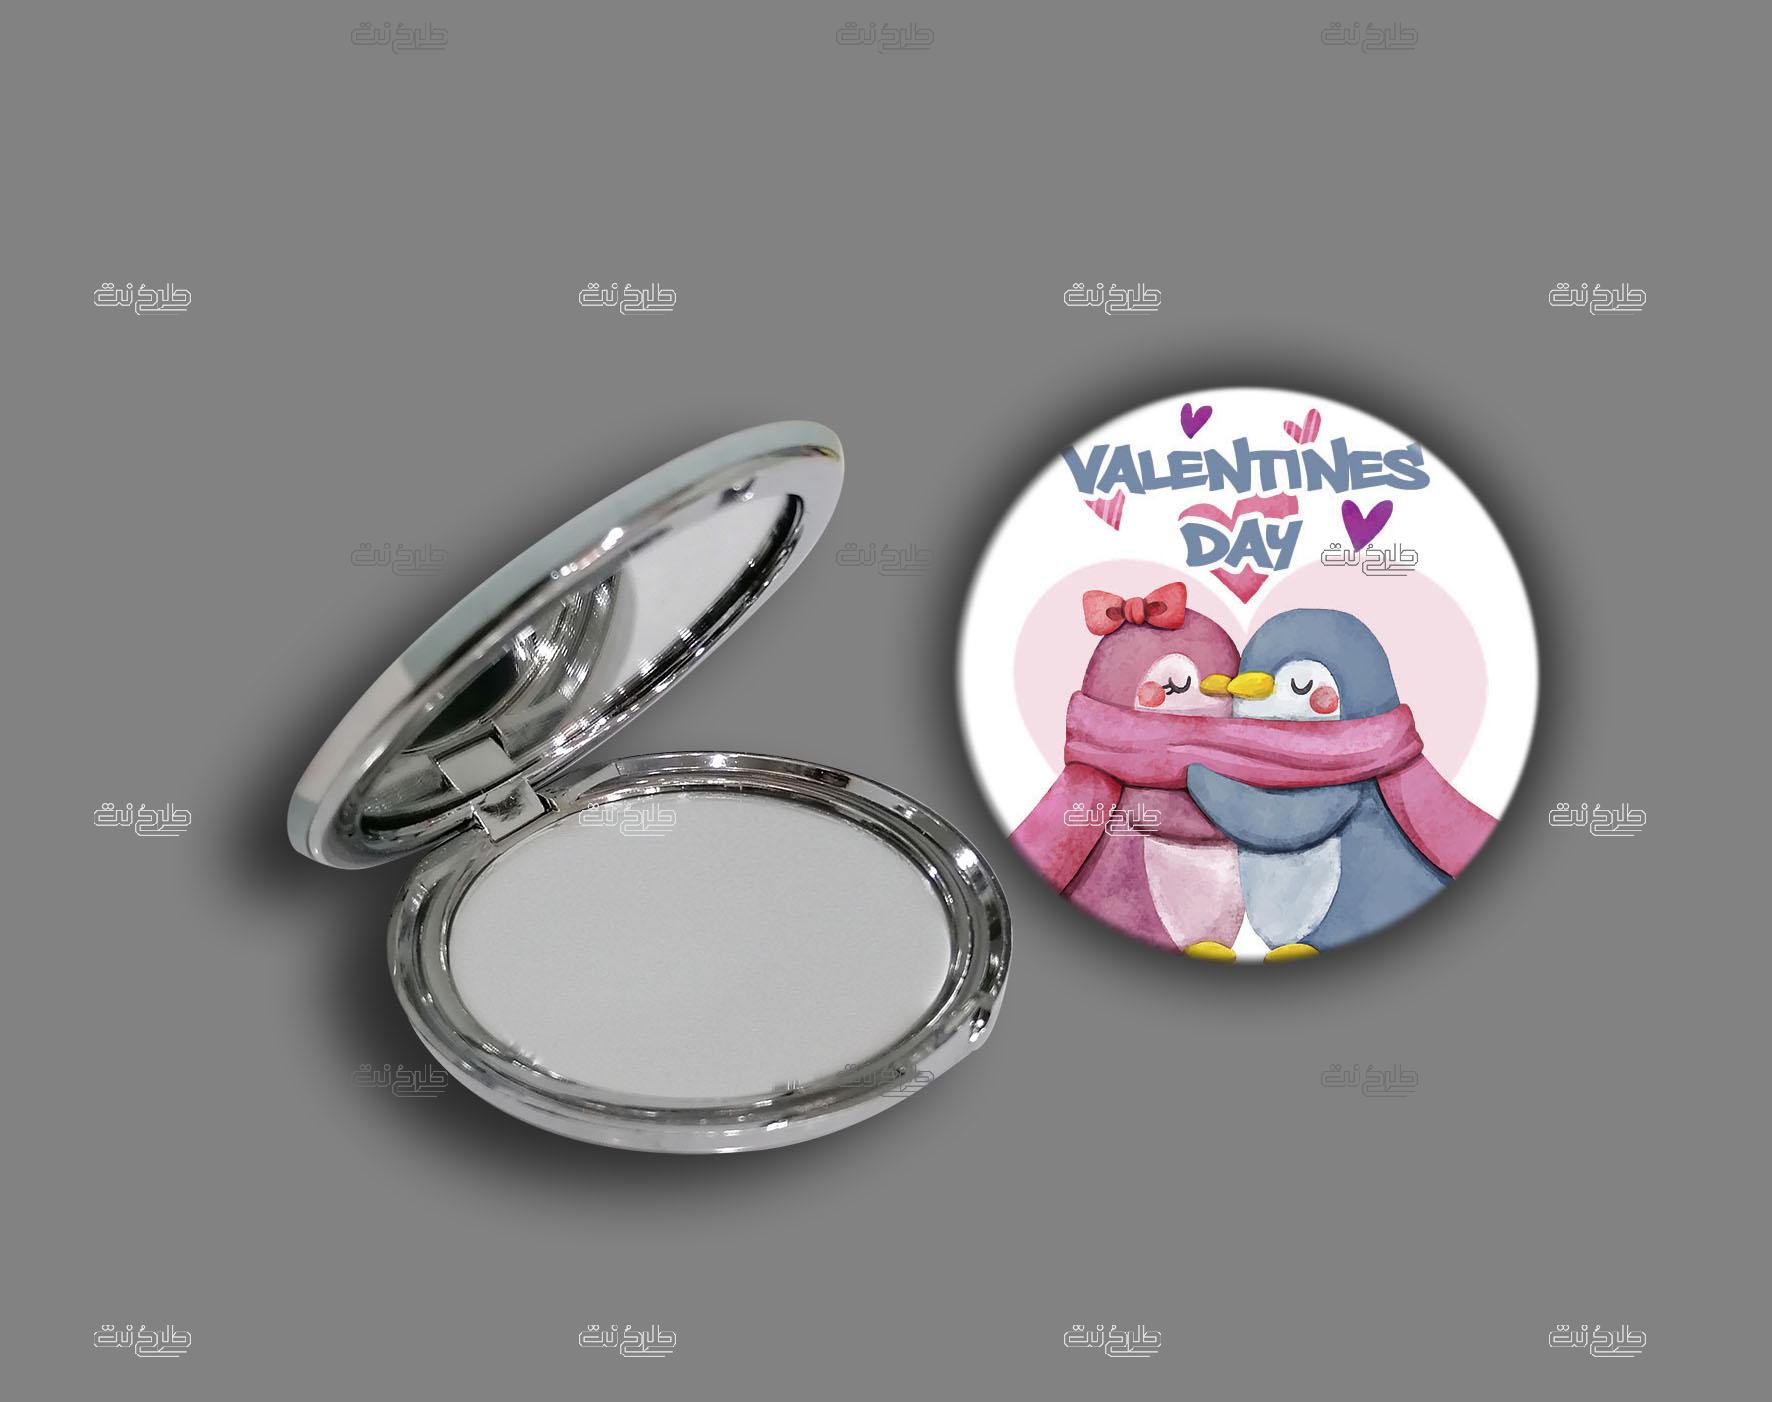 دانلود طرح لایه باز آینه عشق با متن "Valentine's Day"